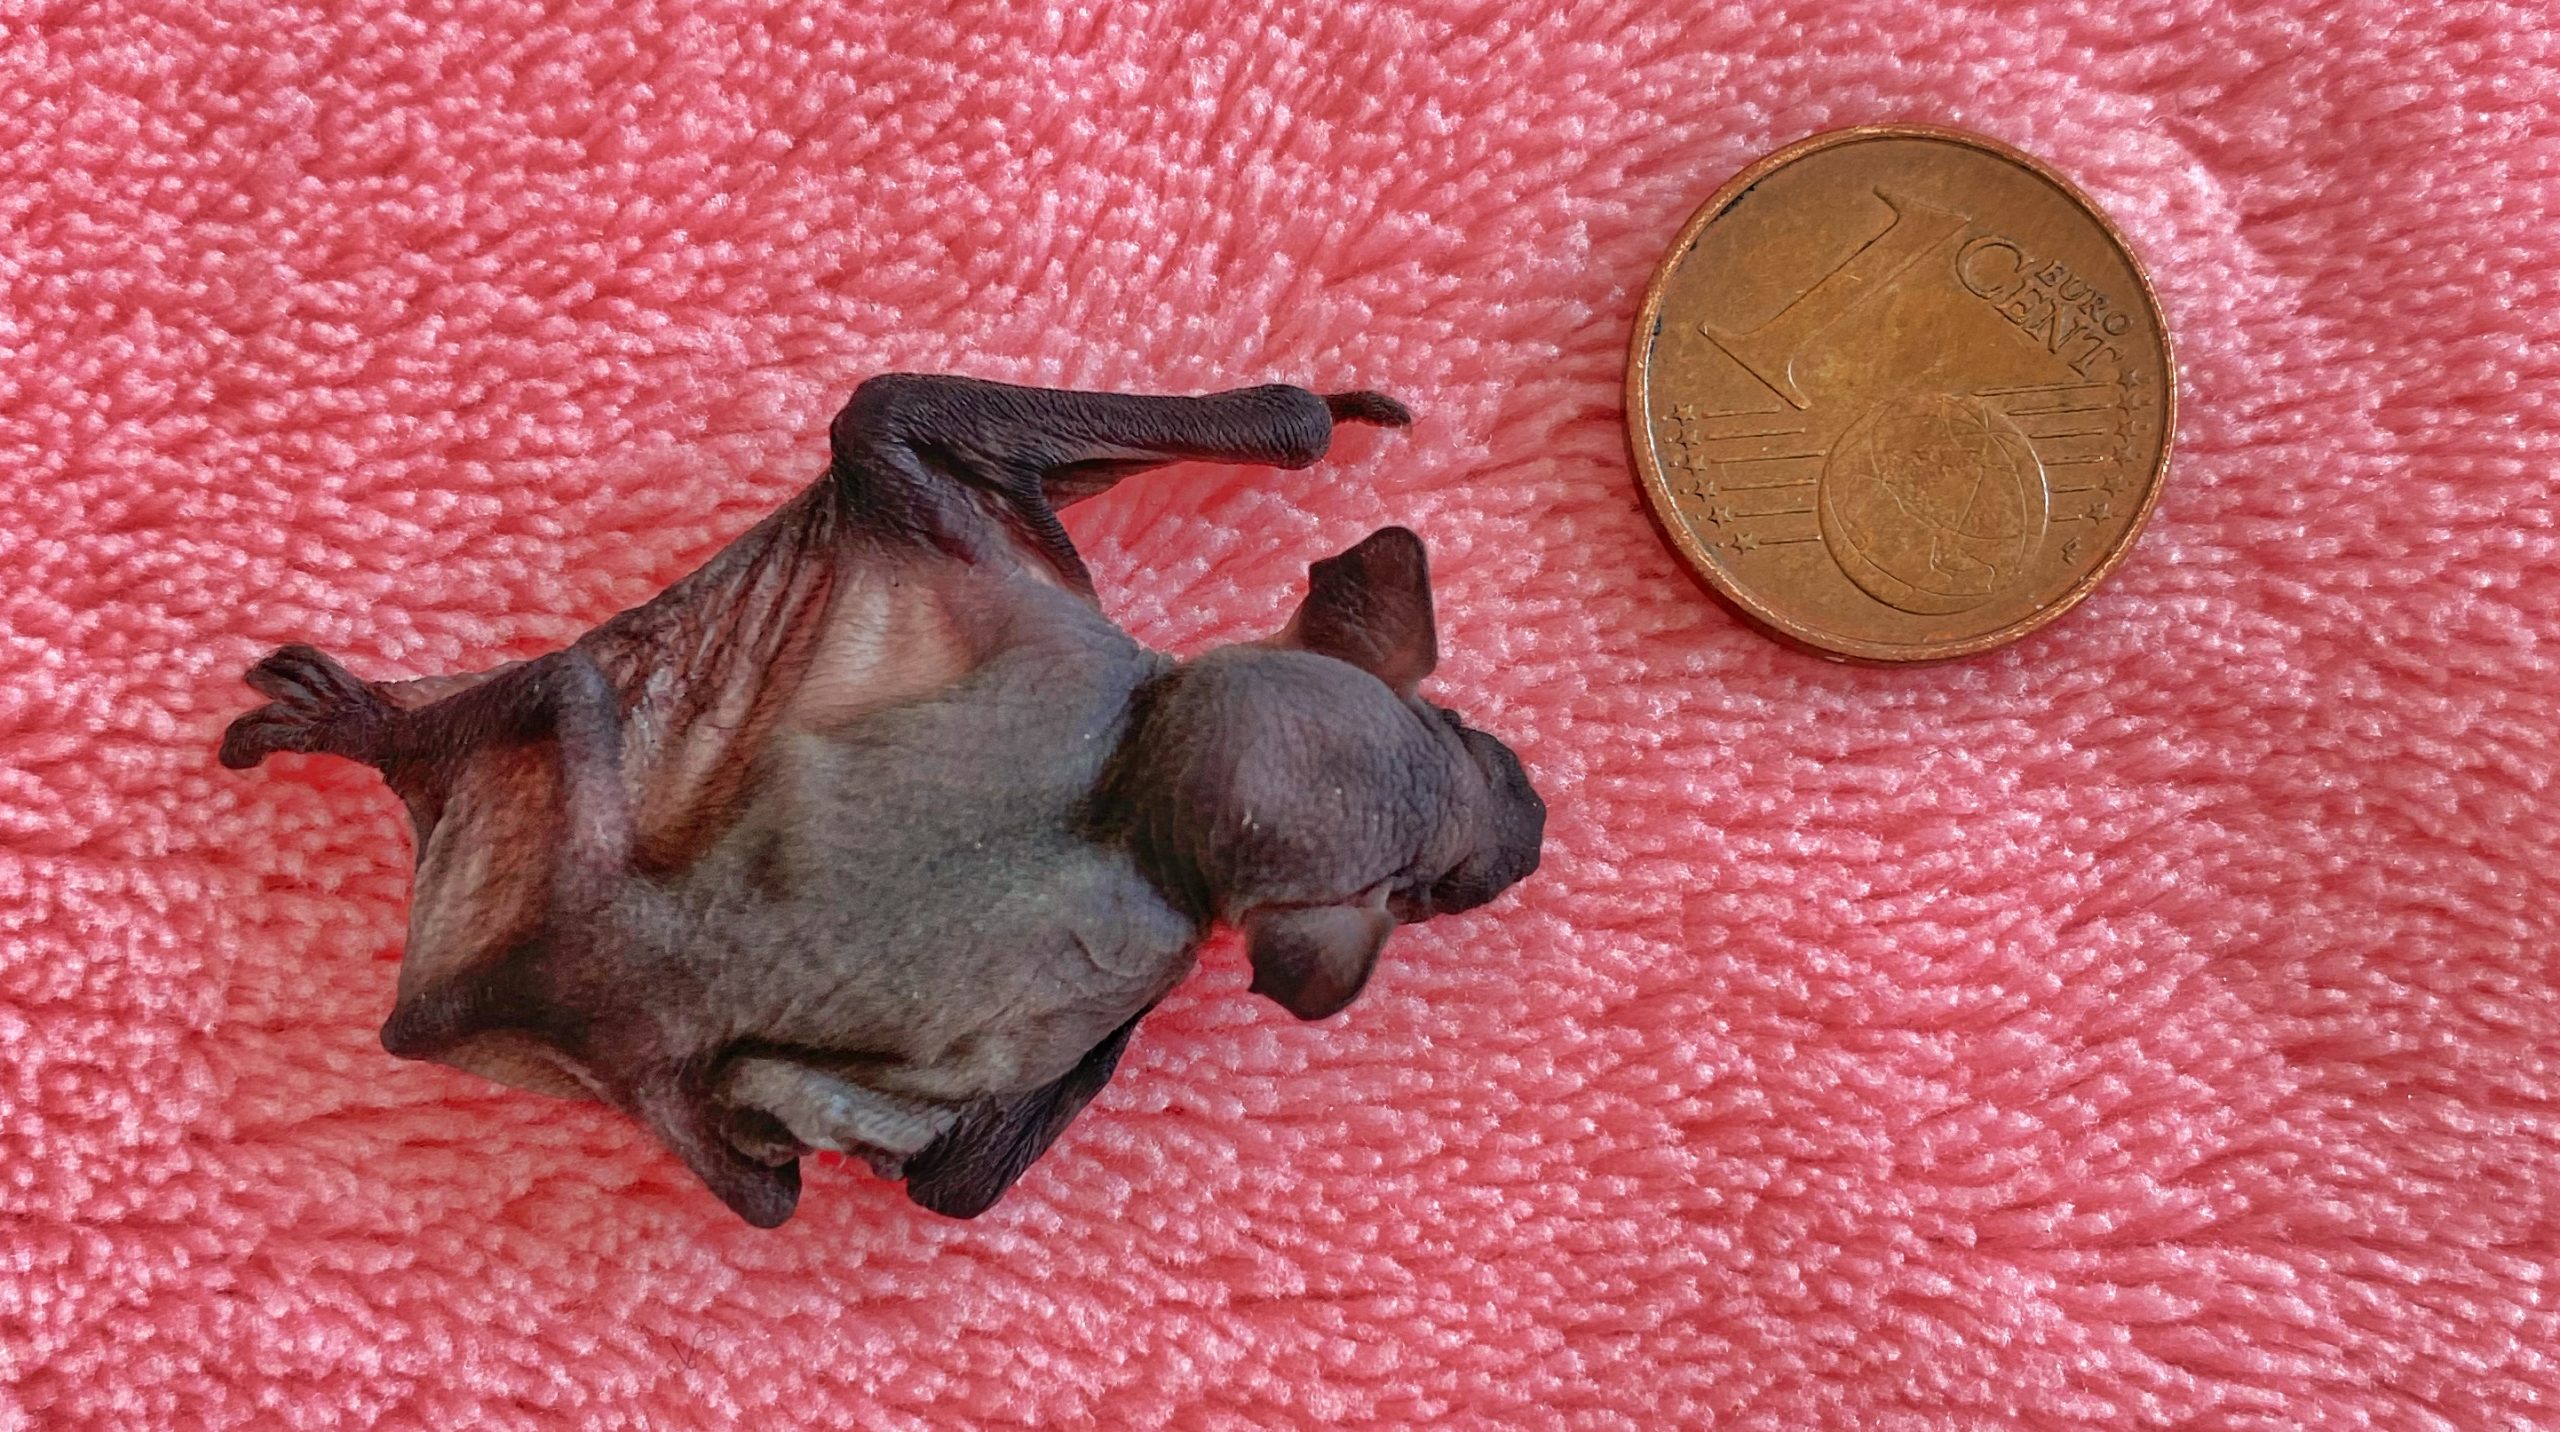 Fledermaus-Baby: Kleiner und leichter als ein Cent-Stück